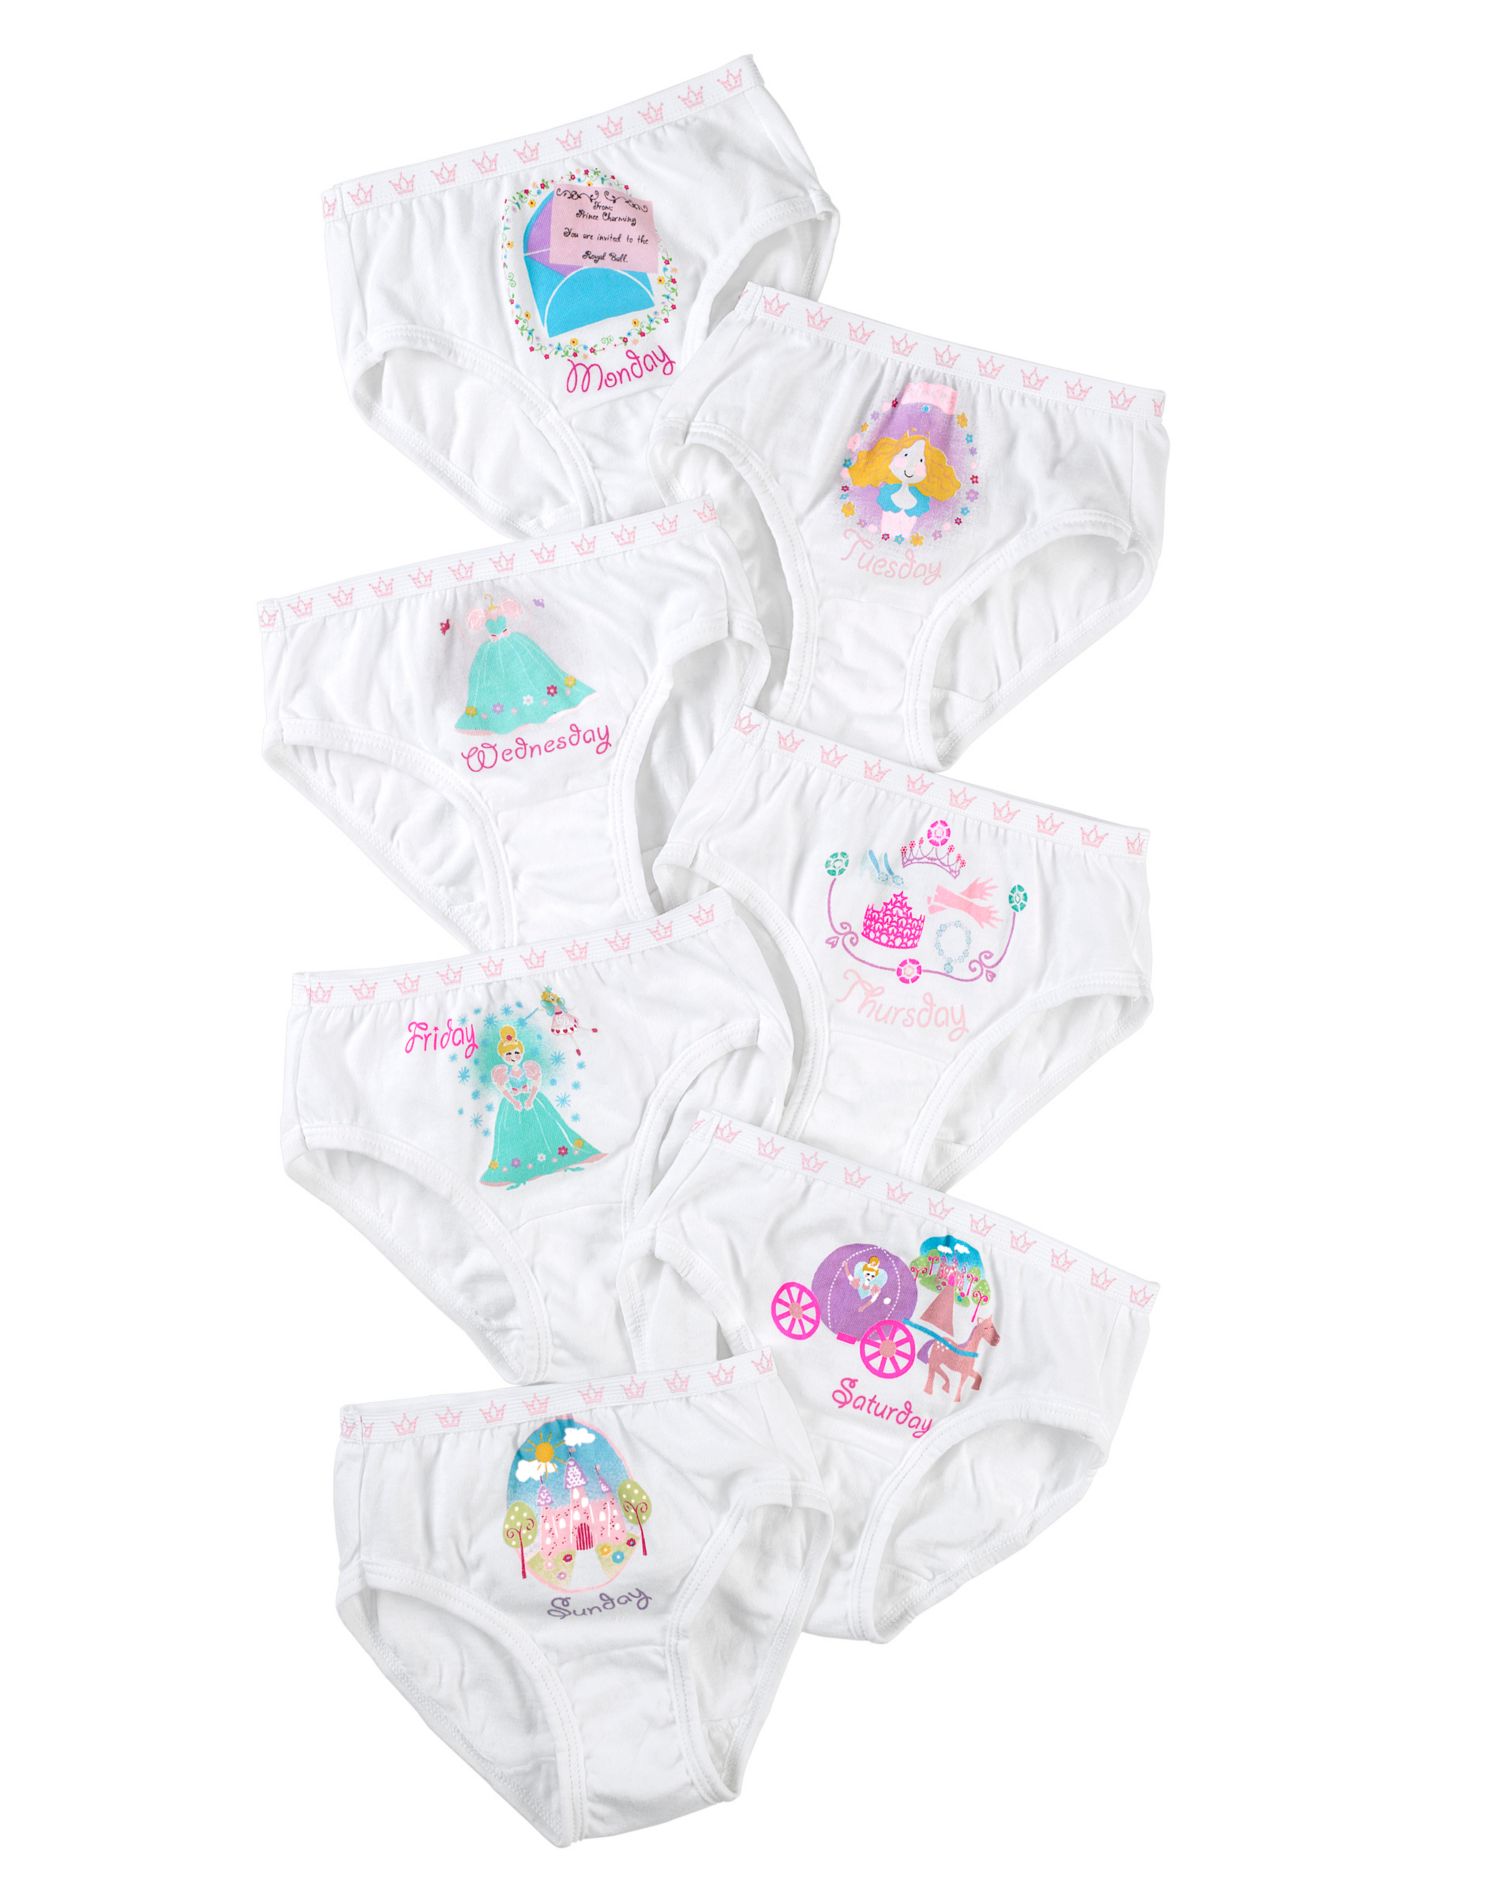 Hanes Brief Underwear, 7-Pack (Toddler Girls) - image 2 of 2